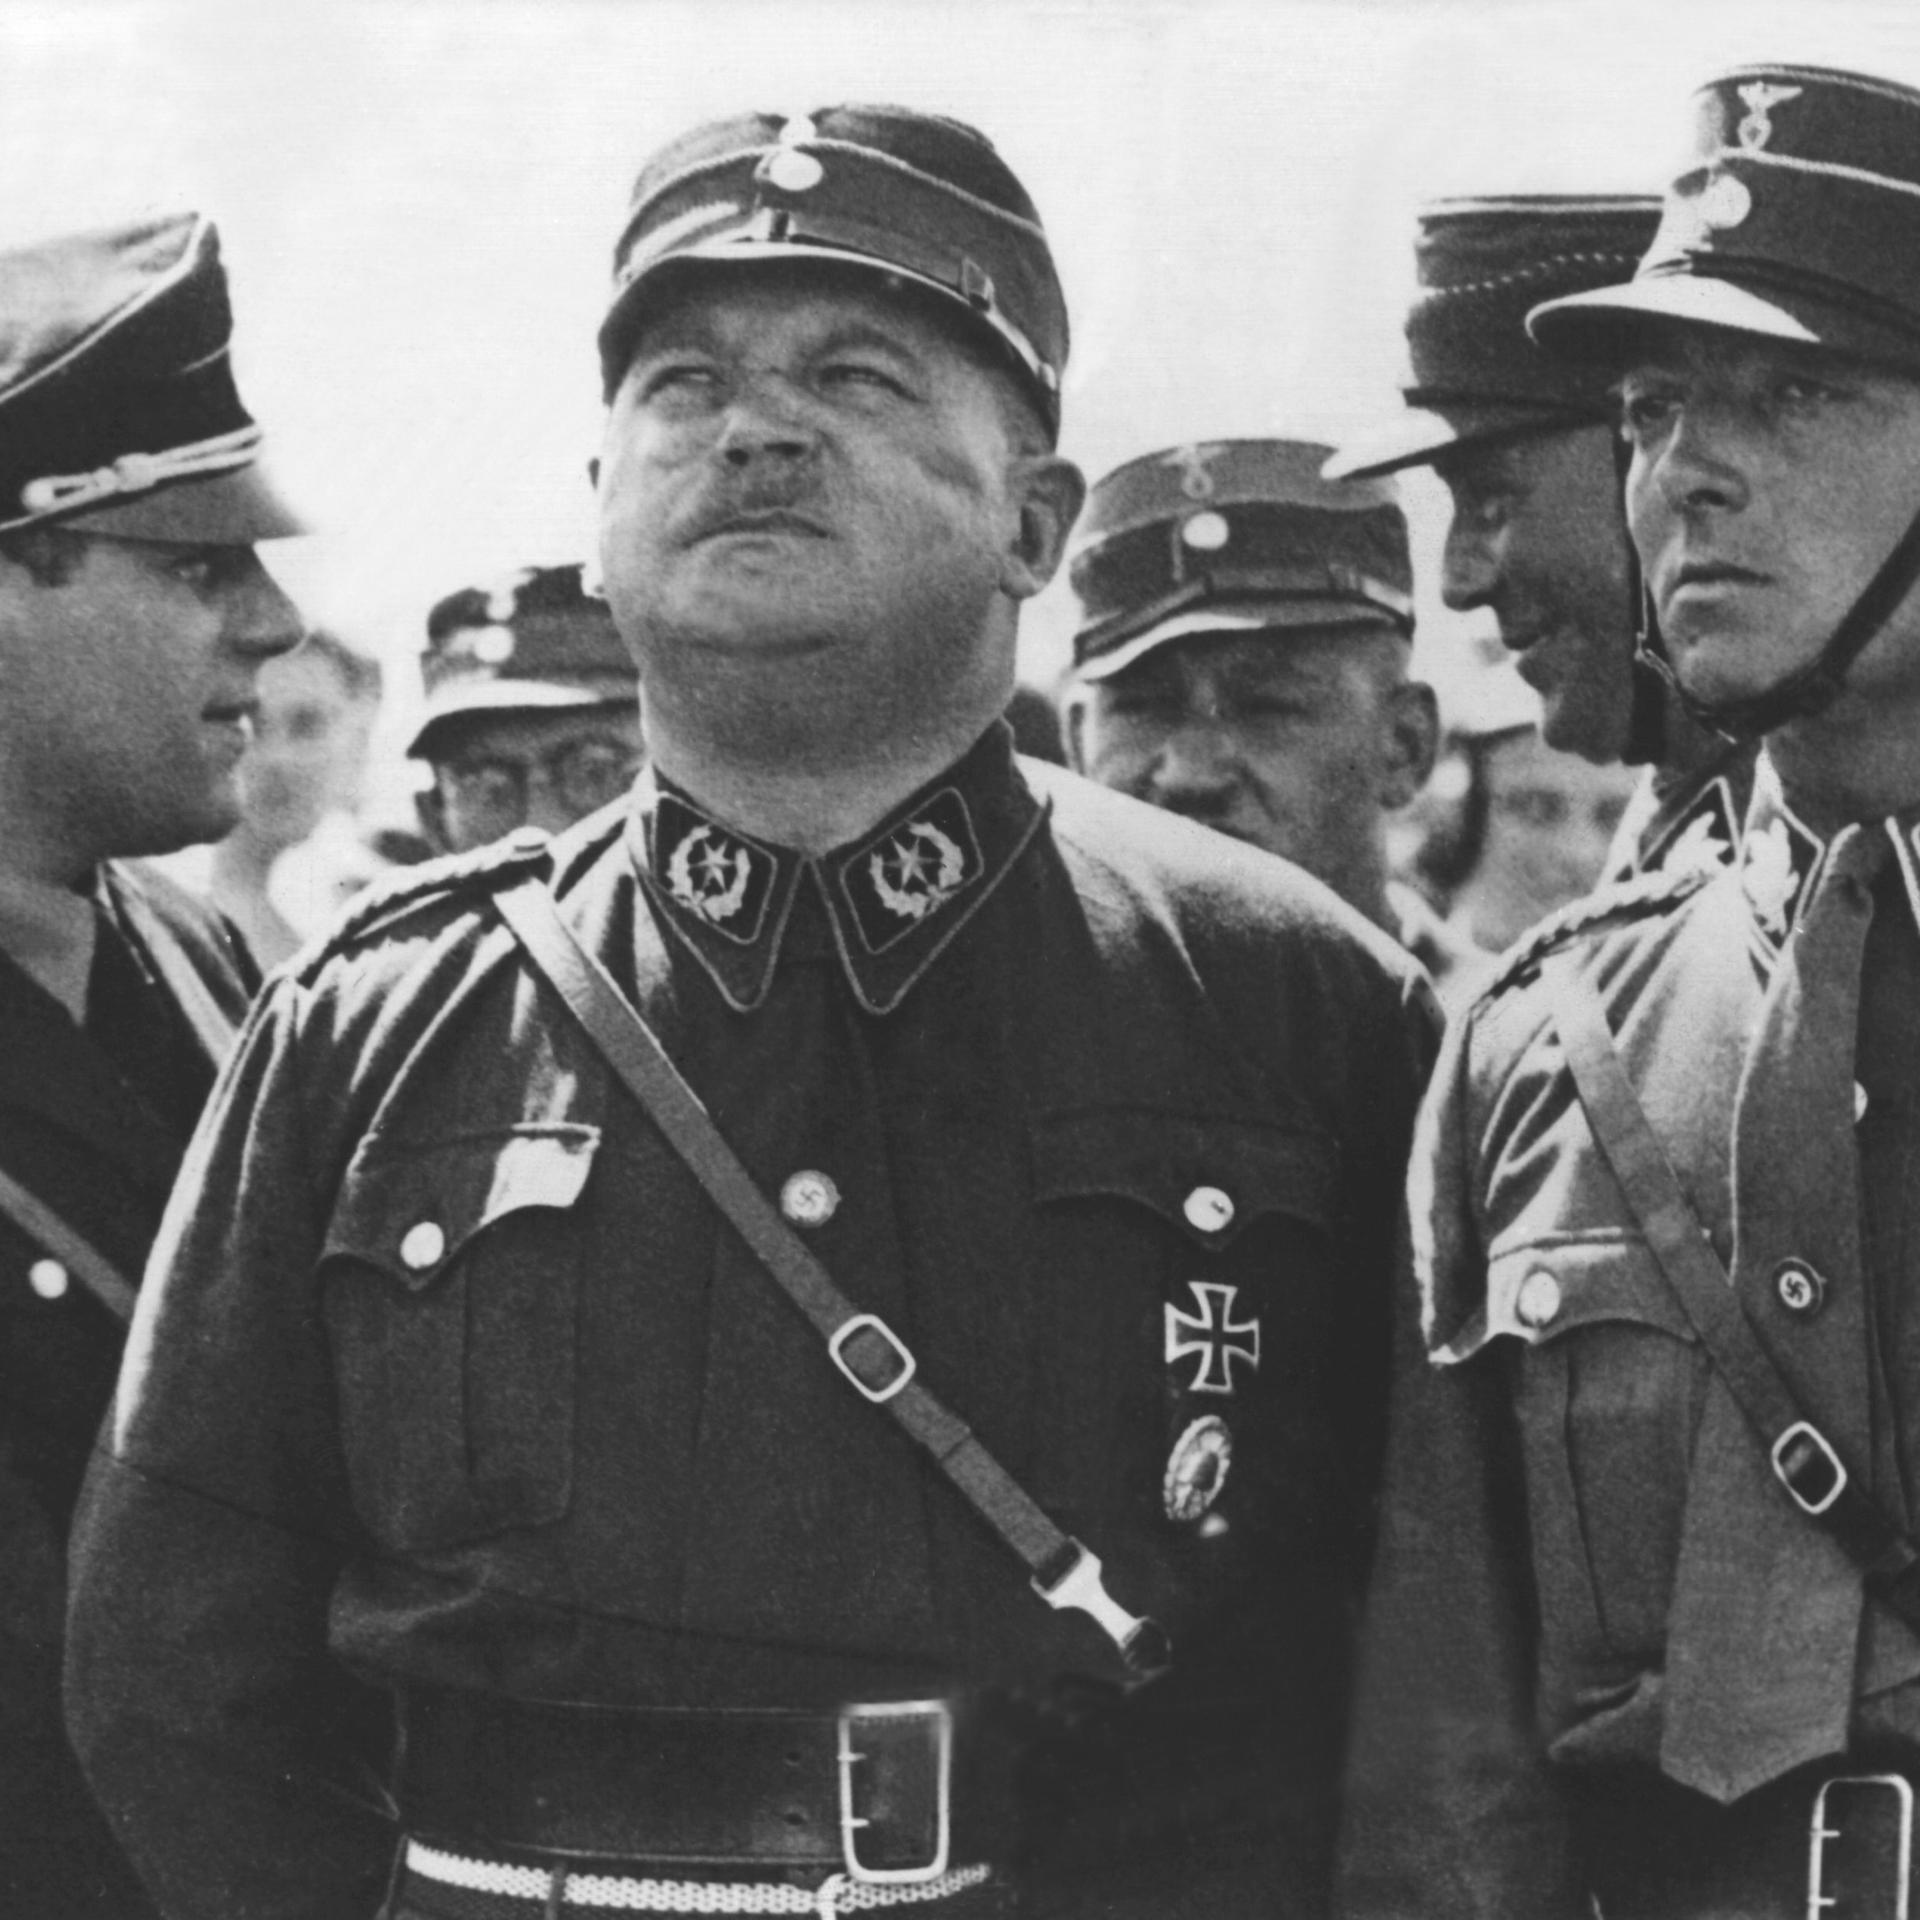 Hitler und Röhm – Kein Putsch, sondern terroristischer Massenmord